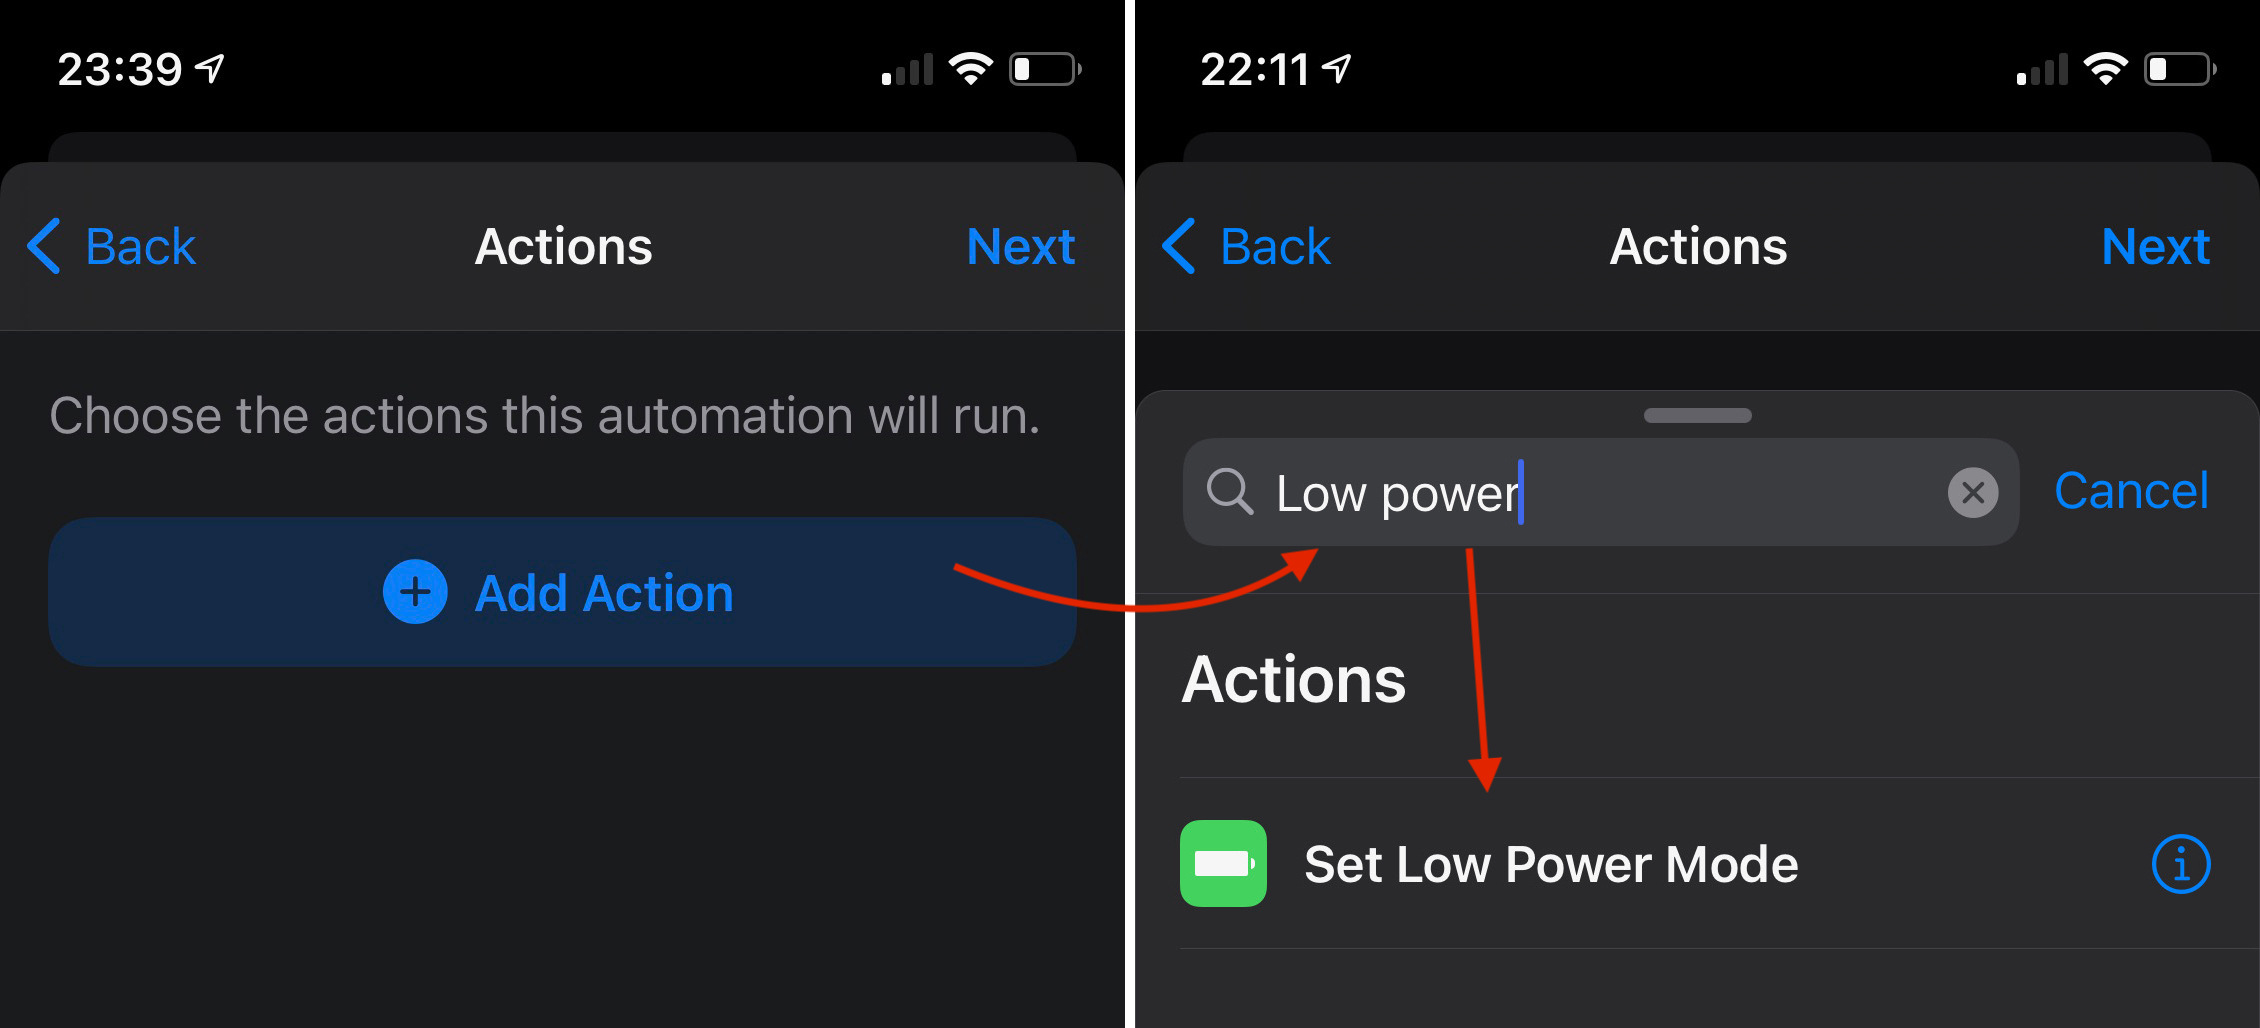 Jak aktywować na stałe? Low Power Mode pe iPhone - Bateria wytrzyma znacznie dłużej